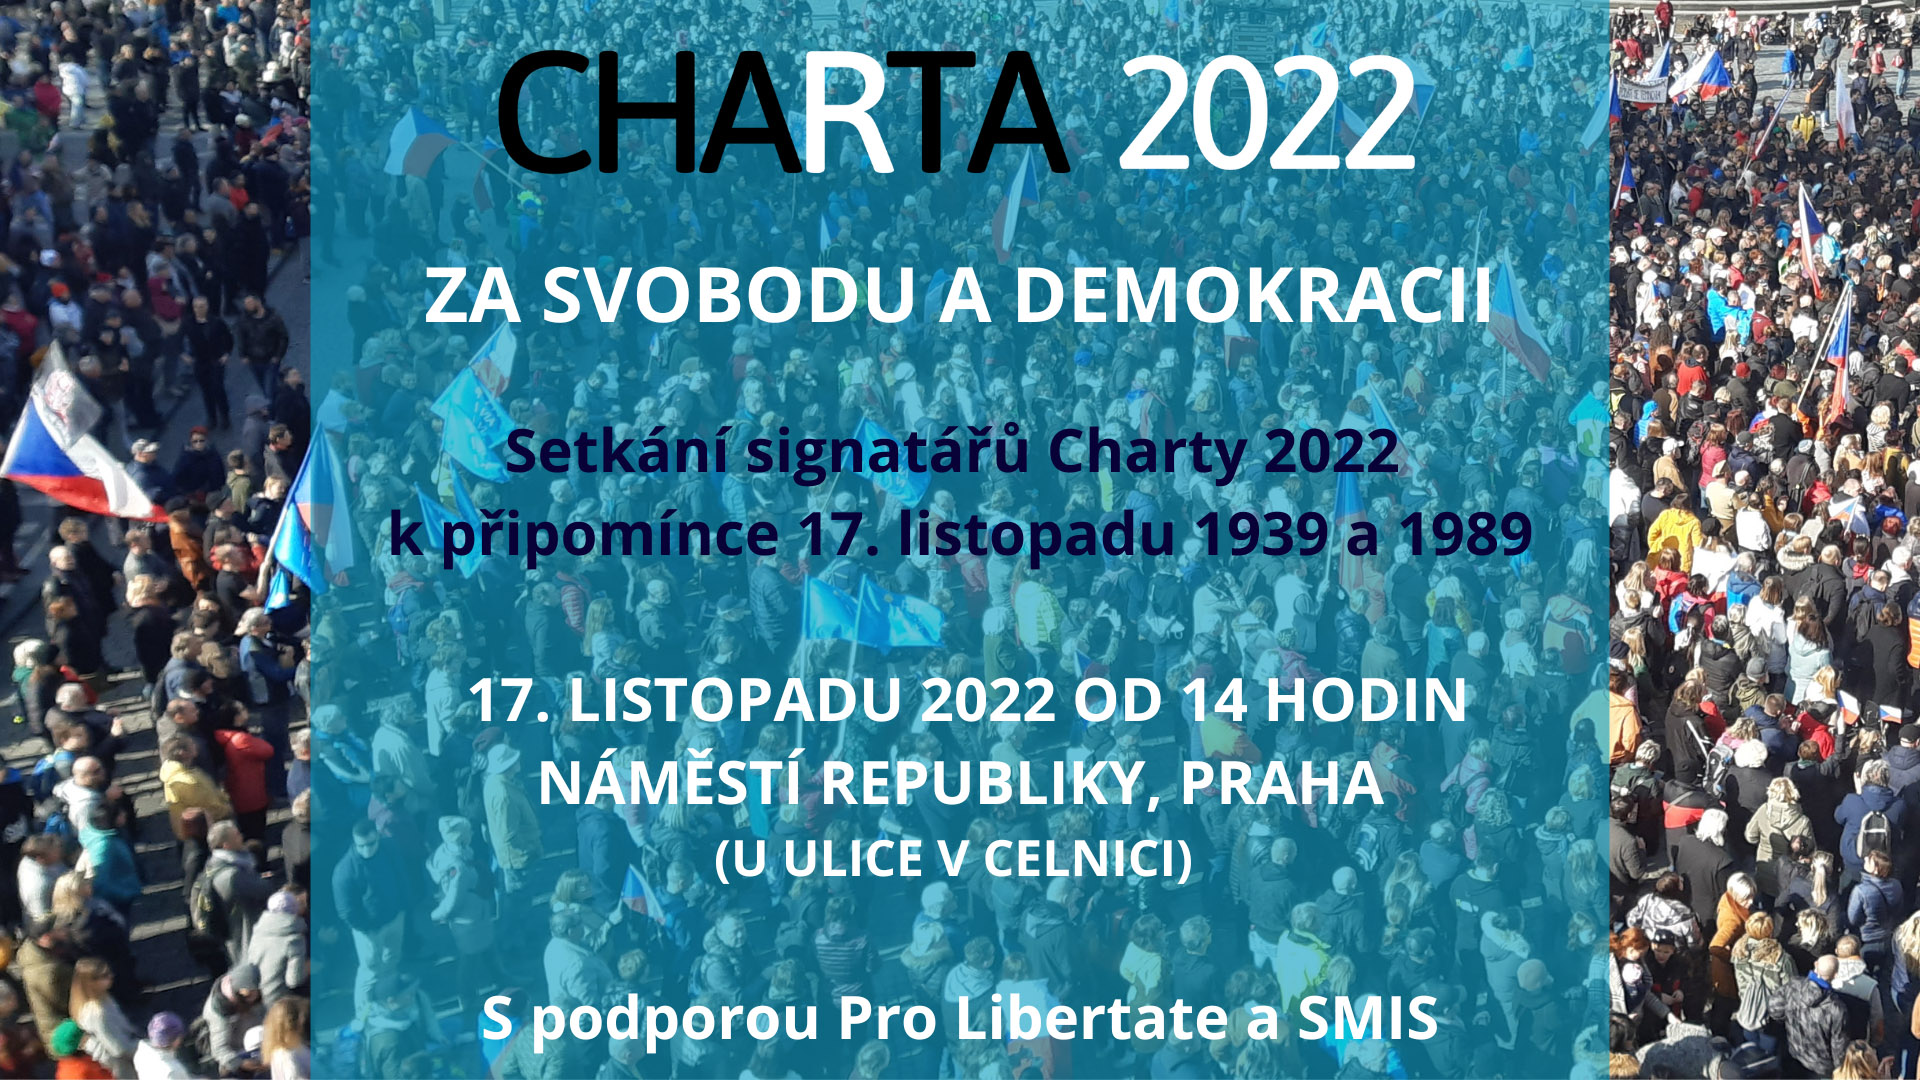 Charta 2022 Praha Manifestace Pozvánka setkání